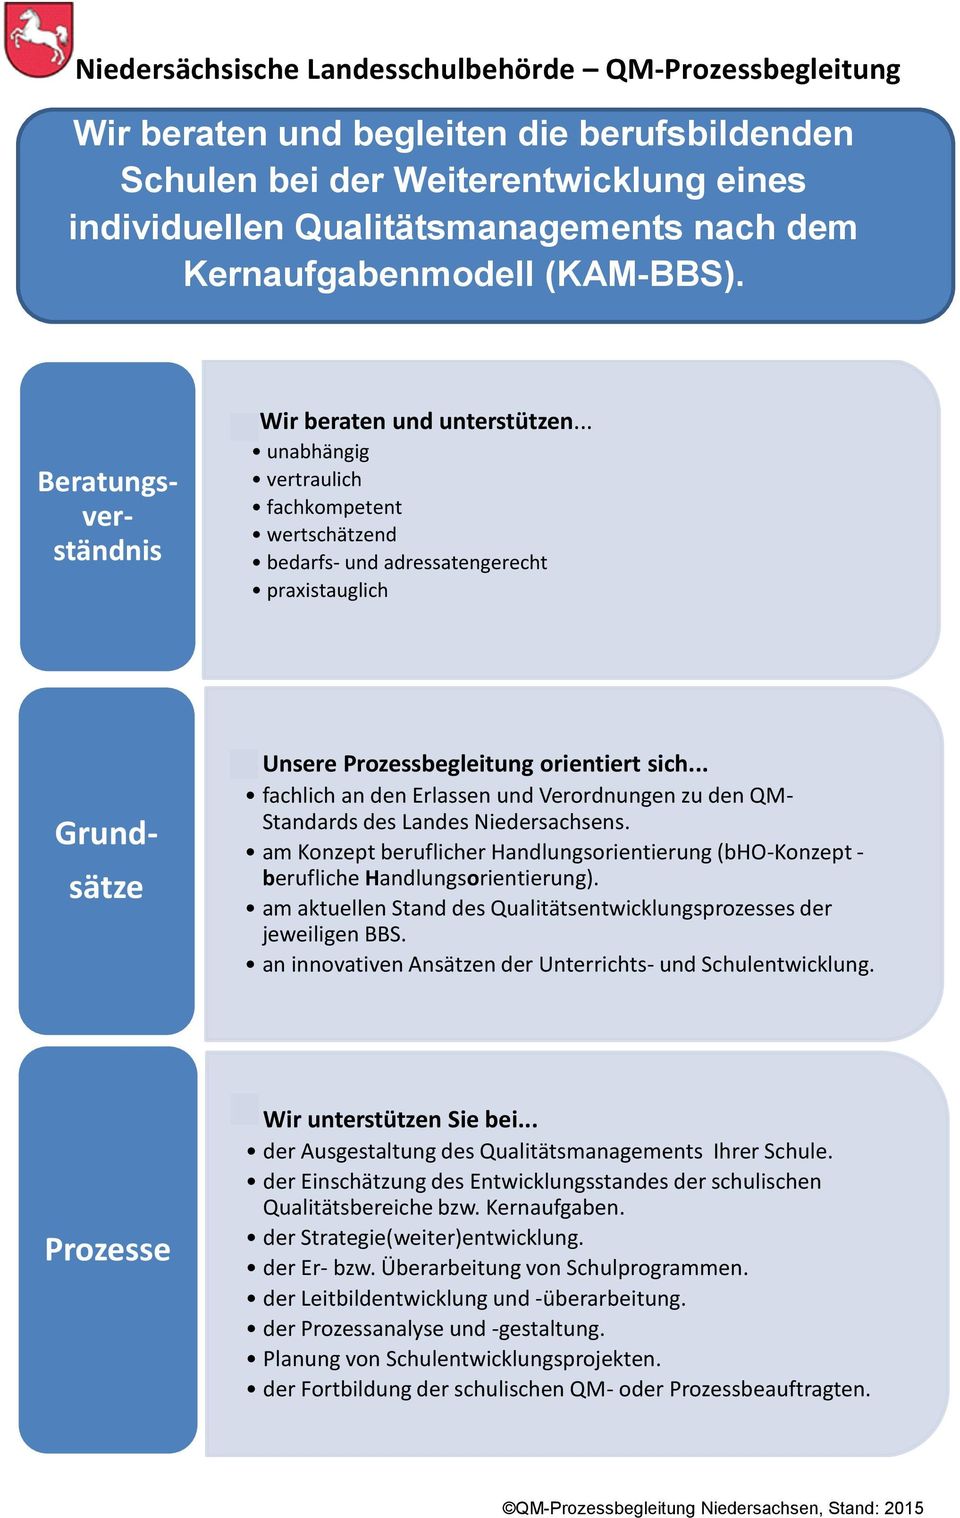 .. fachlich an den Erlassen und Verordnungen zu den QM- Standards des Landes Niedersachsens. am Konzept beruflicher Handlungsorientierung (bho-konzept - berufliche Handlungsorientierung).